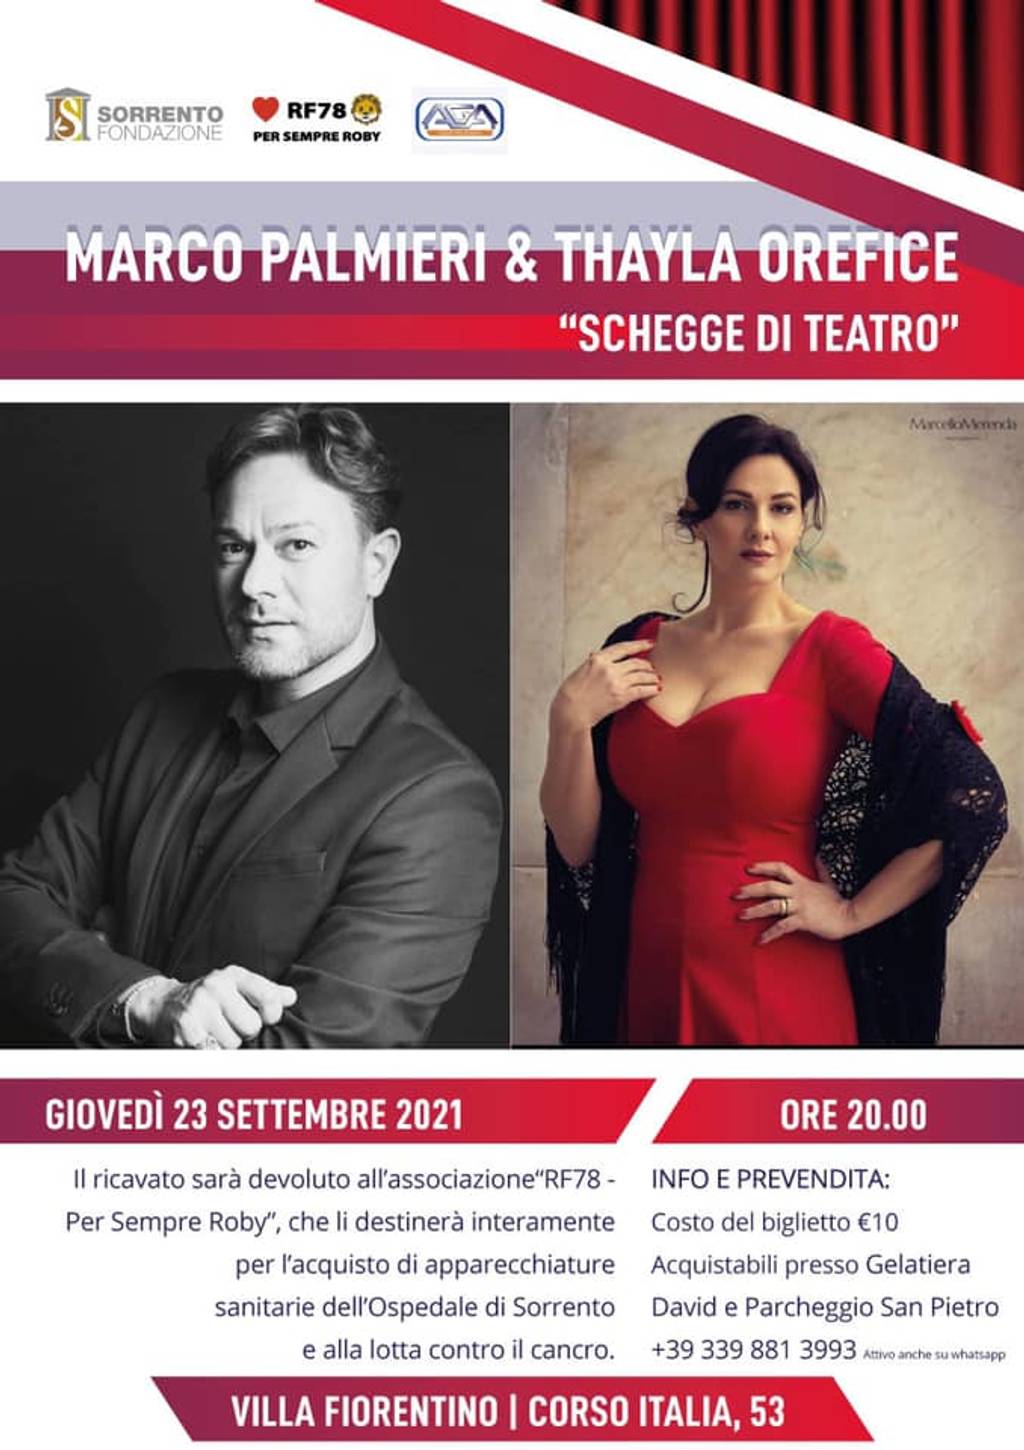 Marco Palmieri and Thayla Orefice in “Schegge di teatro”